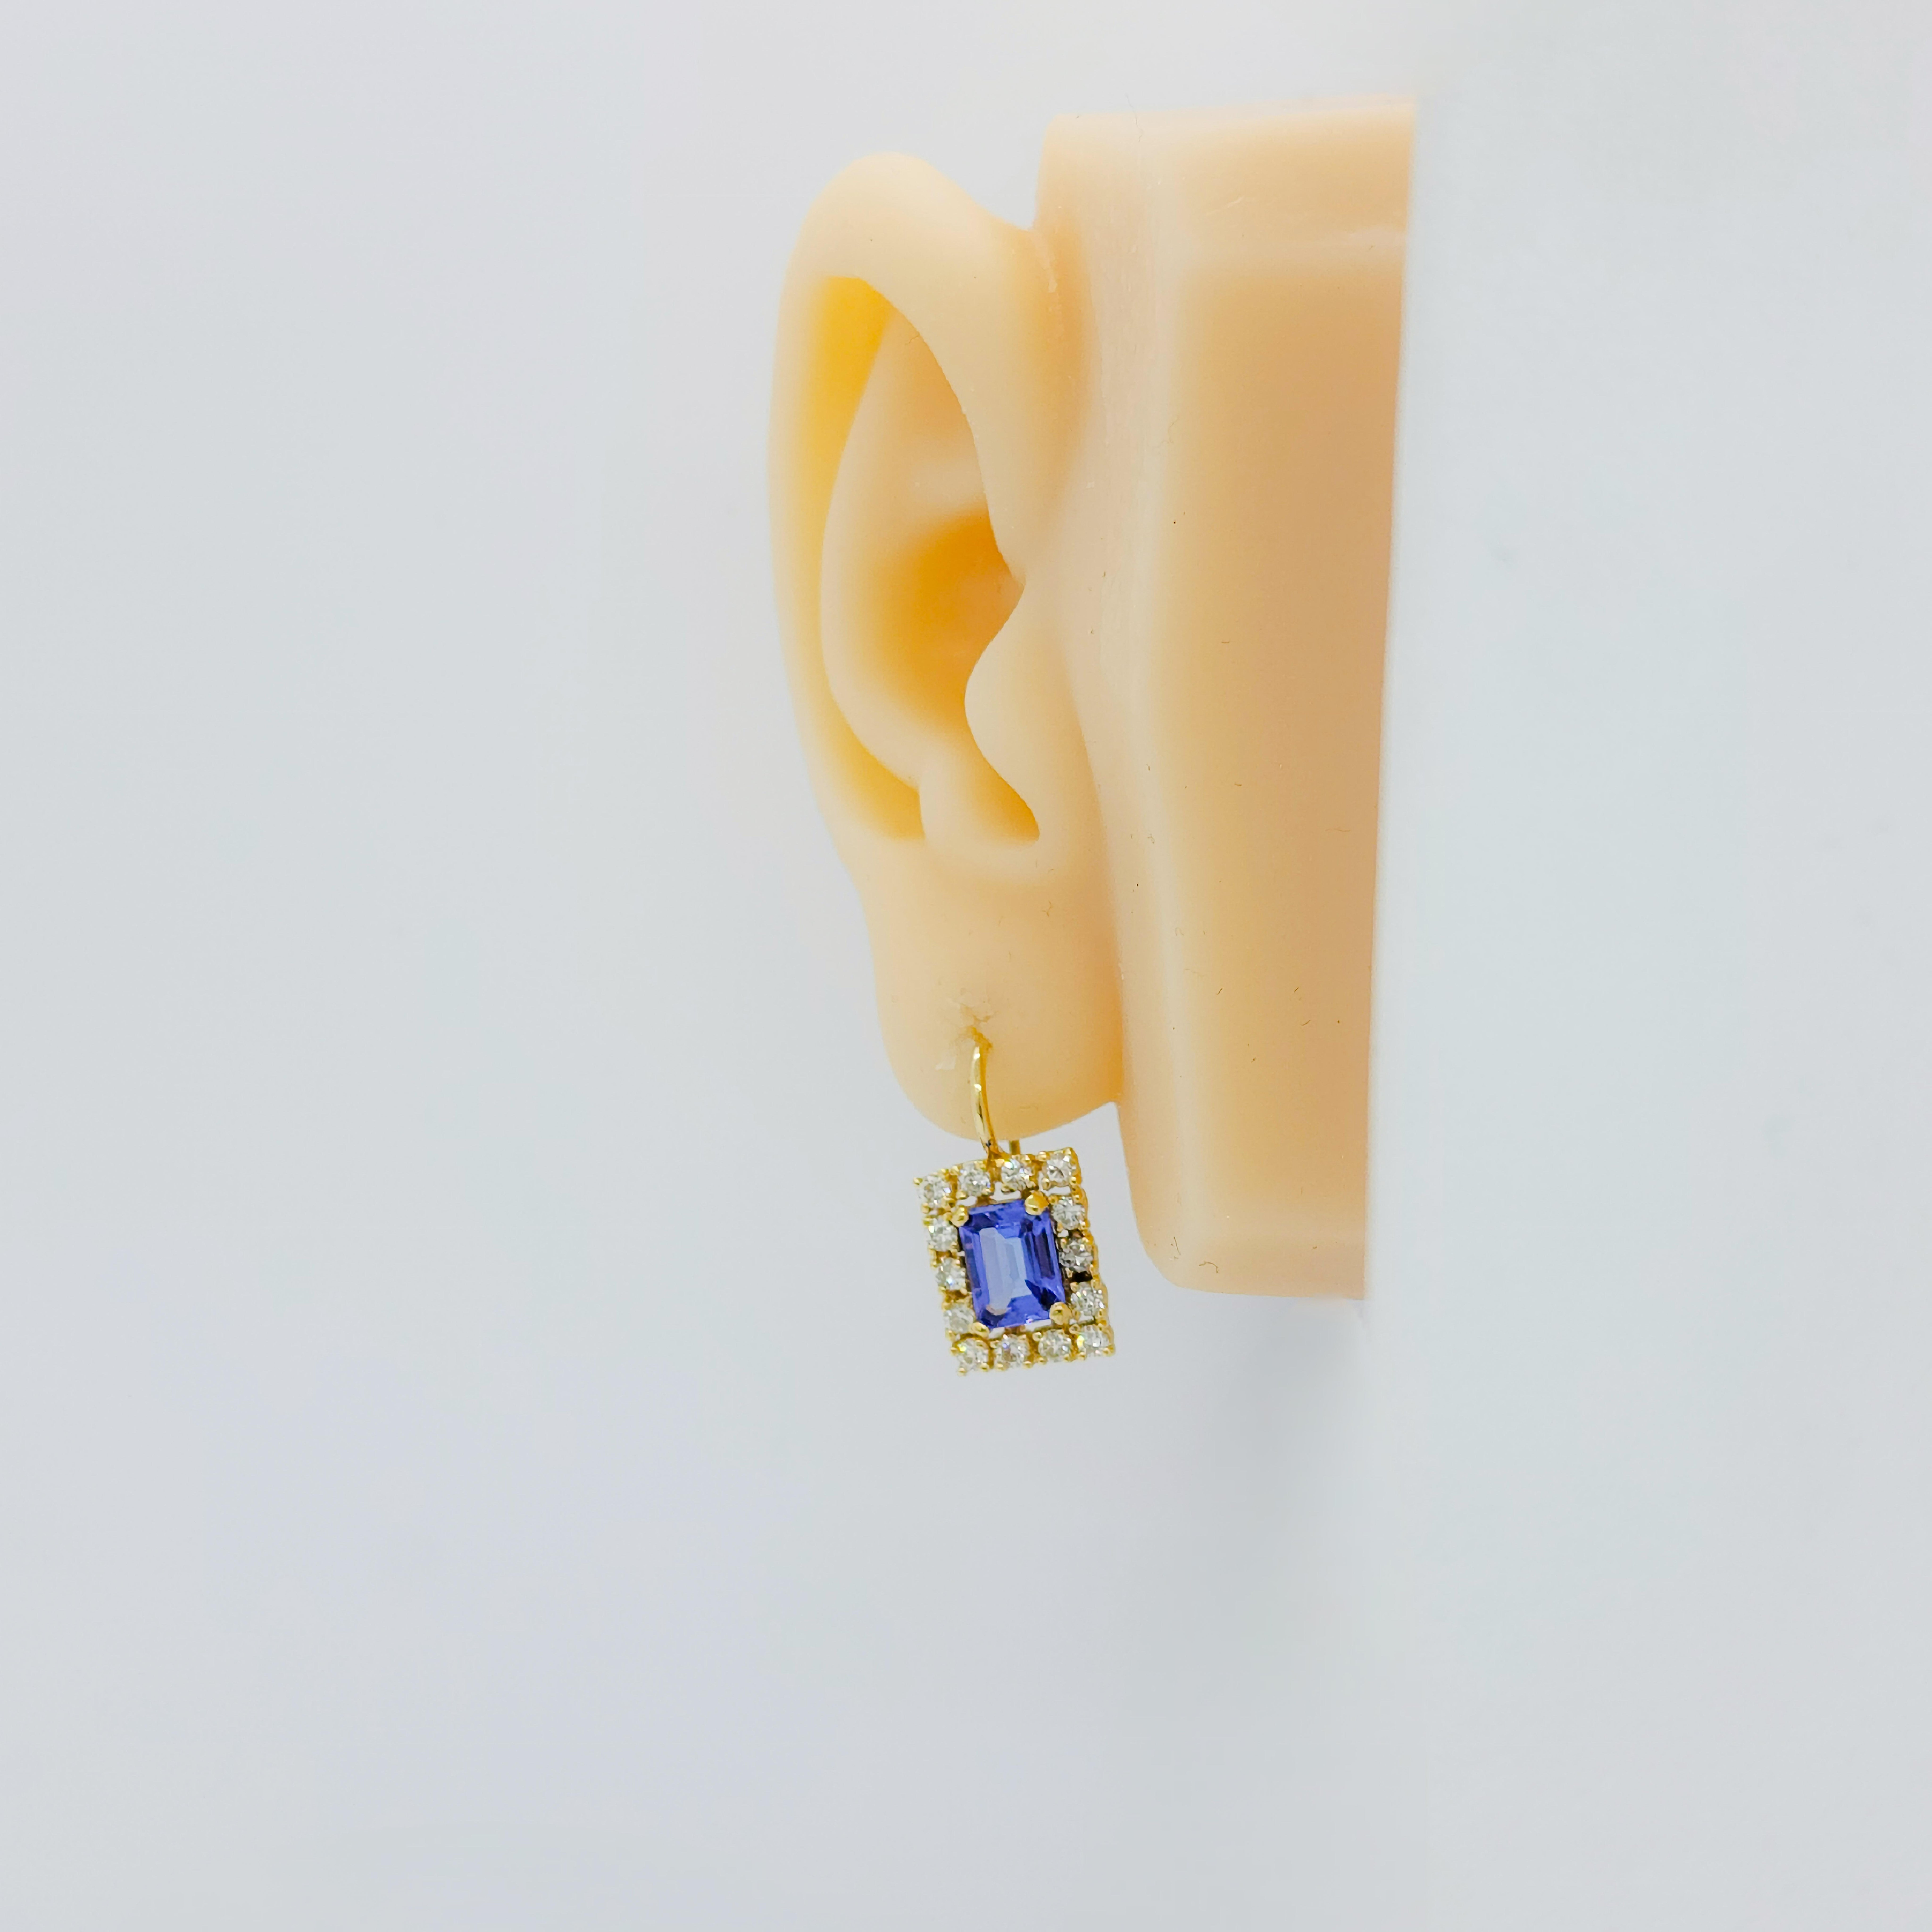 Schöner 2,40 ct. Tansanit im Smaragdschliff mit 1,00 ct. weißen Diamanten guter Qualität.  Handgefertigt in 18k Gelbgold.  Passend dazu ist auch eine Halskette mit Anhänger erhältlich.